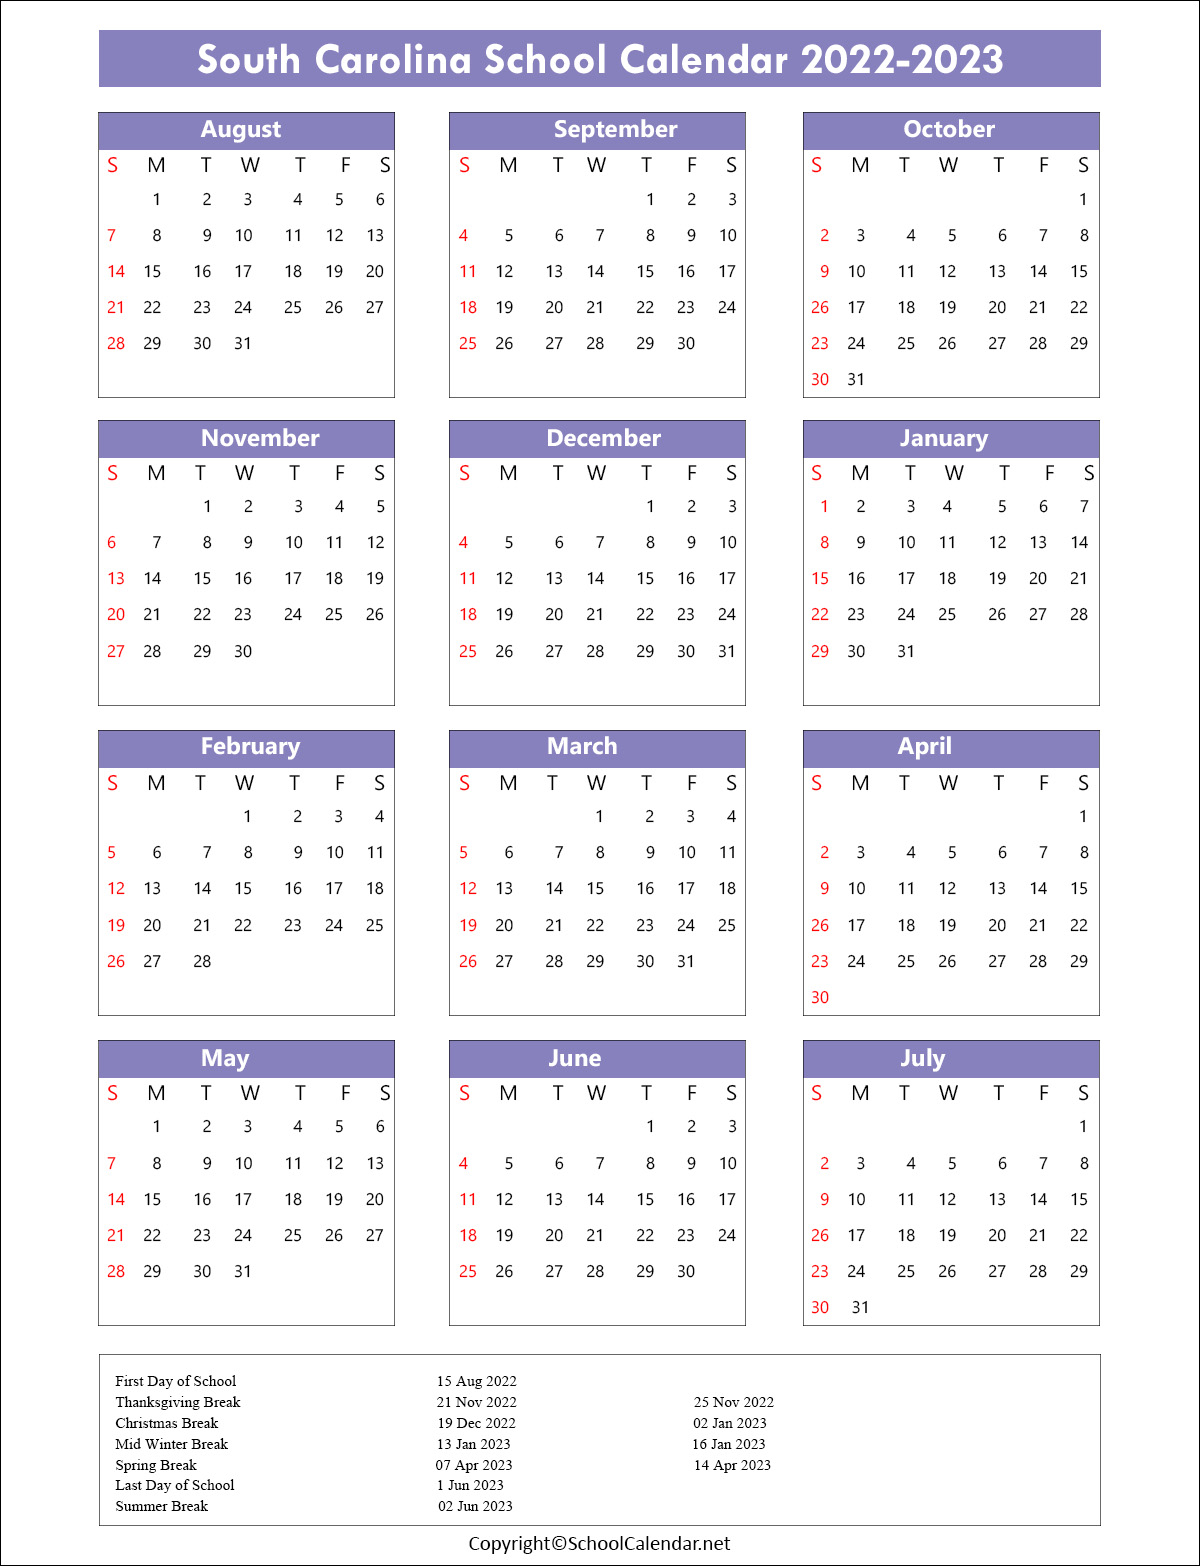 South-Carolina School Calendar 2022